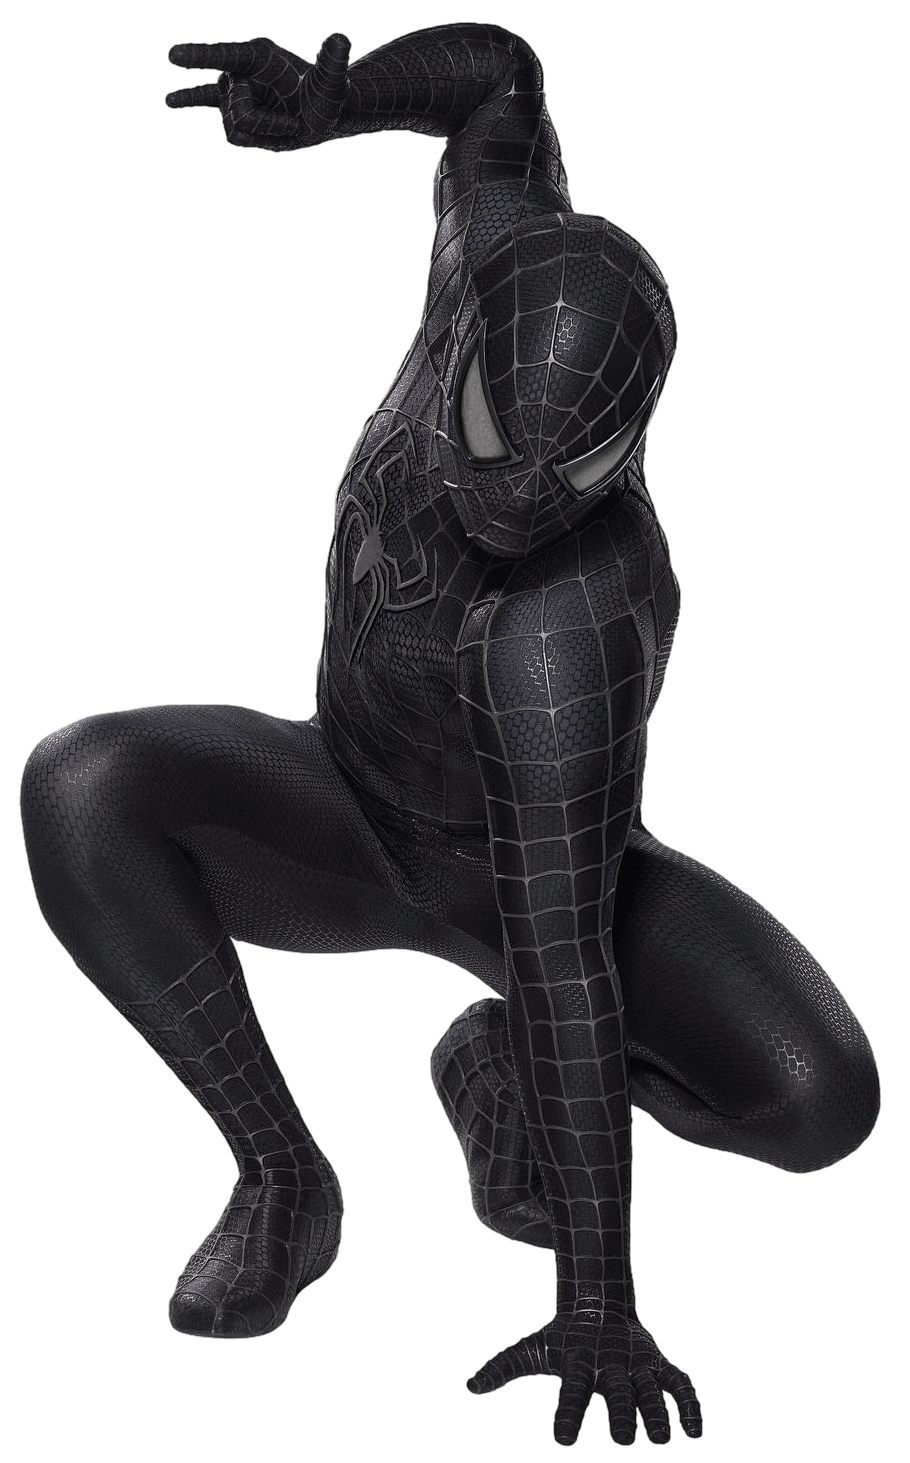 Black Suit Spider-Man - Transparent! by SpeedCam on DeviantArt